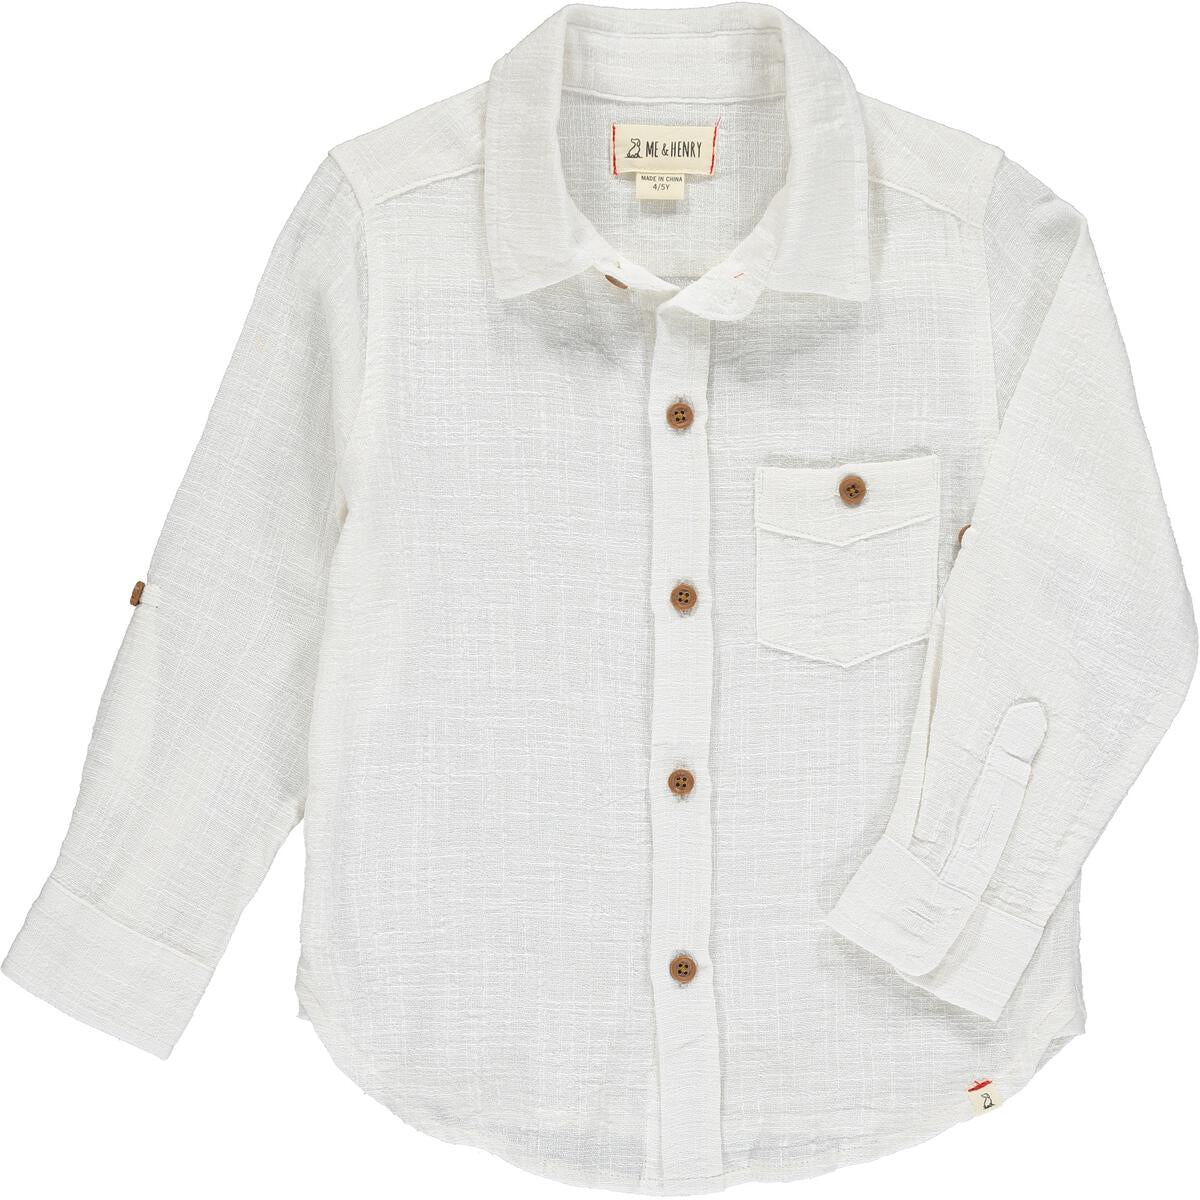 Long Sleeve Linen-like Button Down Shirt